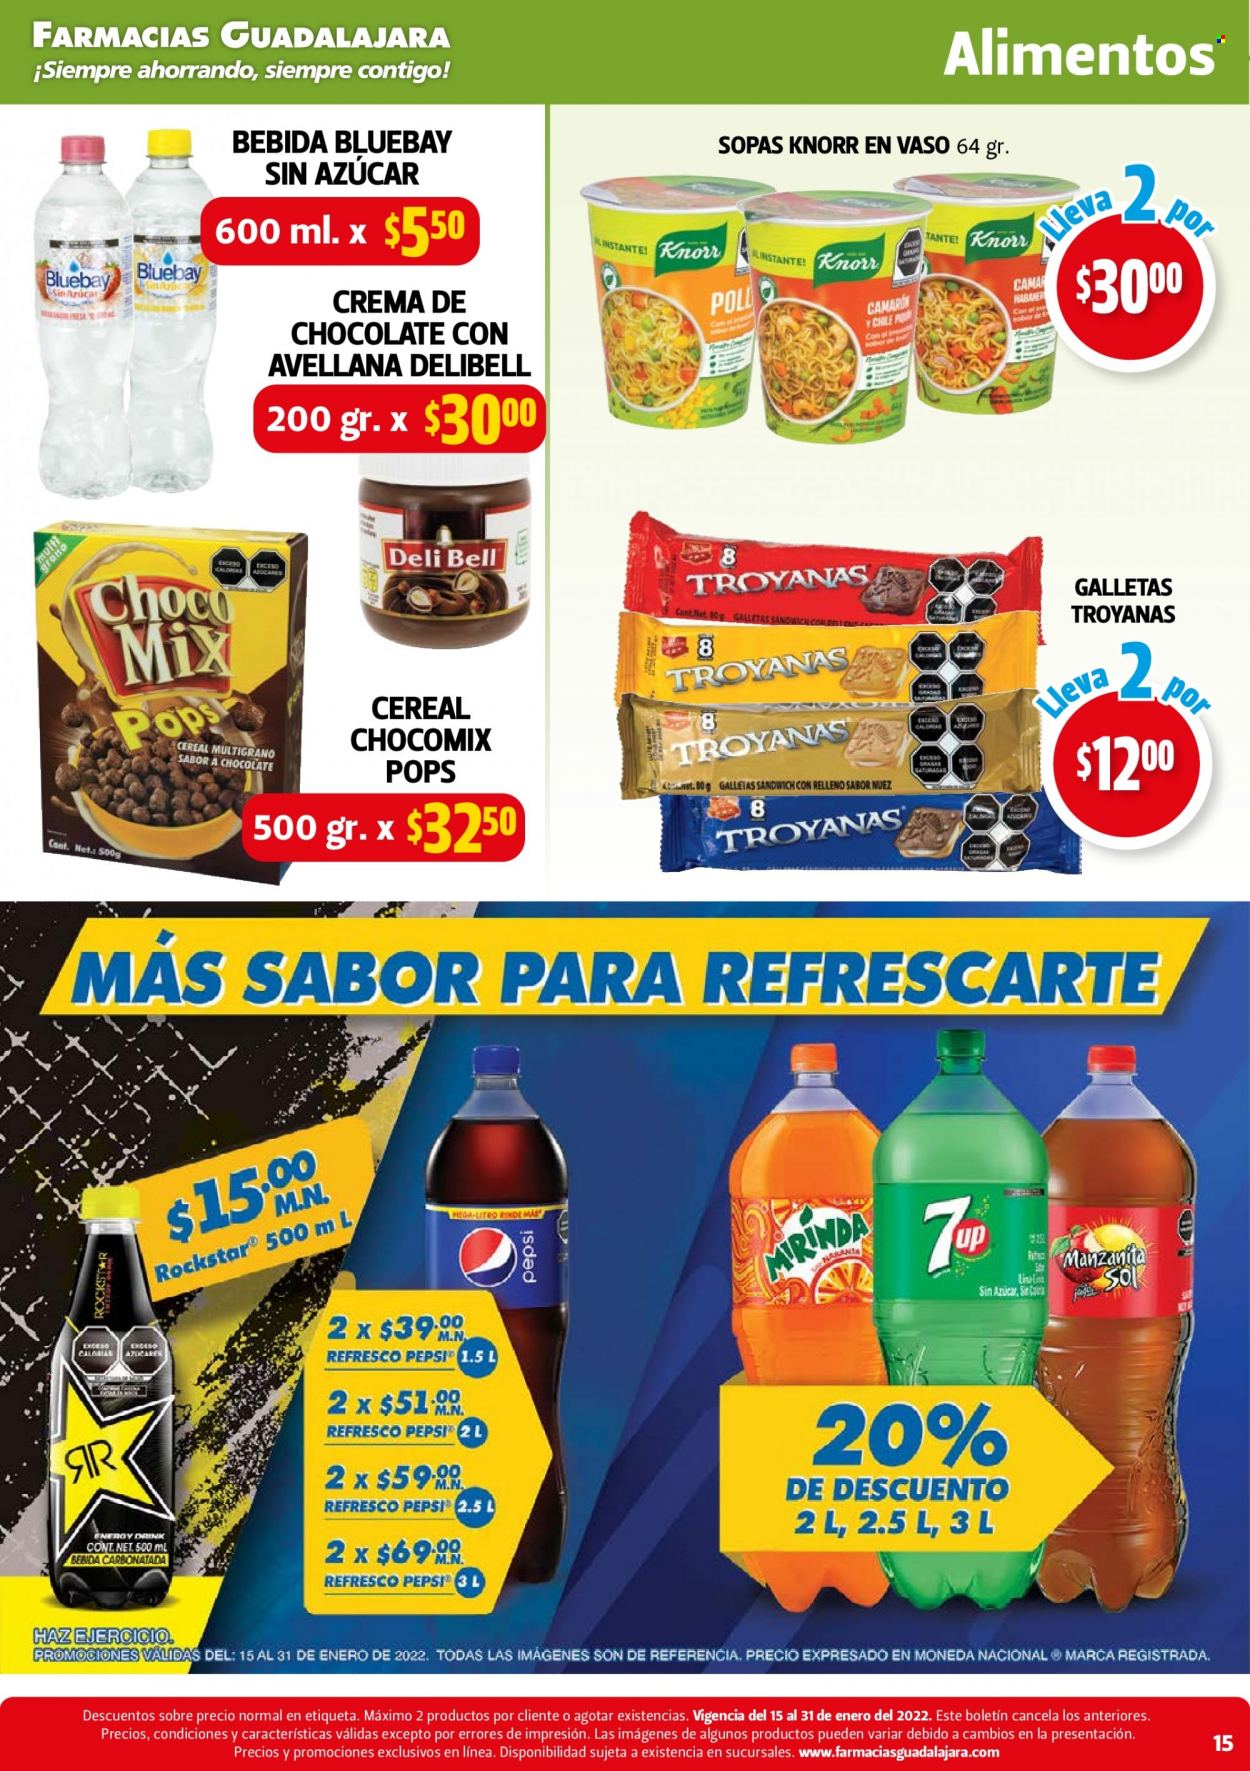 thumbnail - Folleto actual Farmacias Guadalajara - 15.1.2022 - 31.1.2022 - Ventas - camarón, Knorr, sopa, galletas, cereales, nueces, refresco, bebida, Pepsi. Página 15.